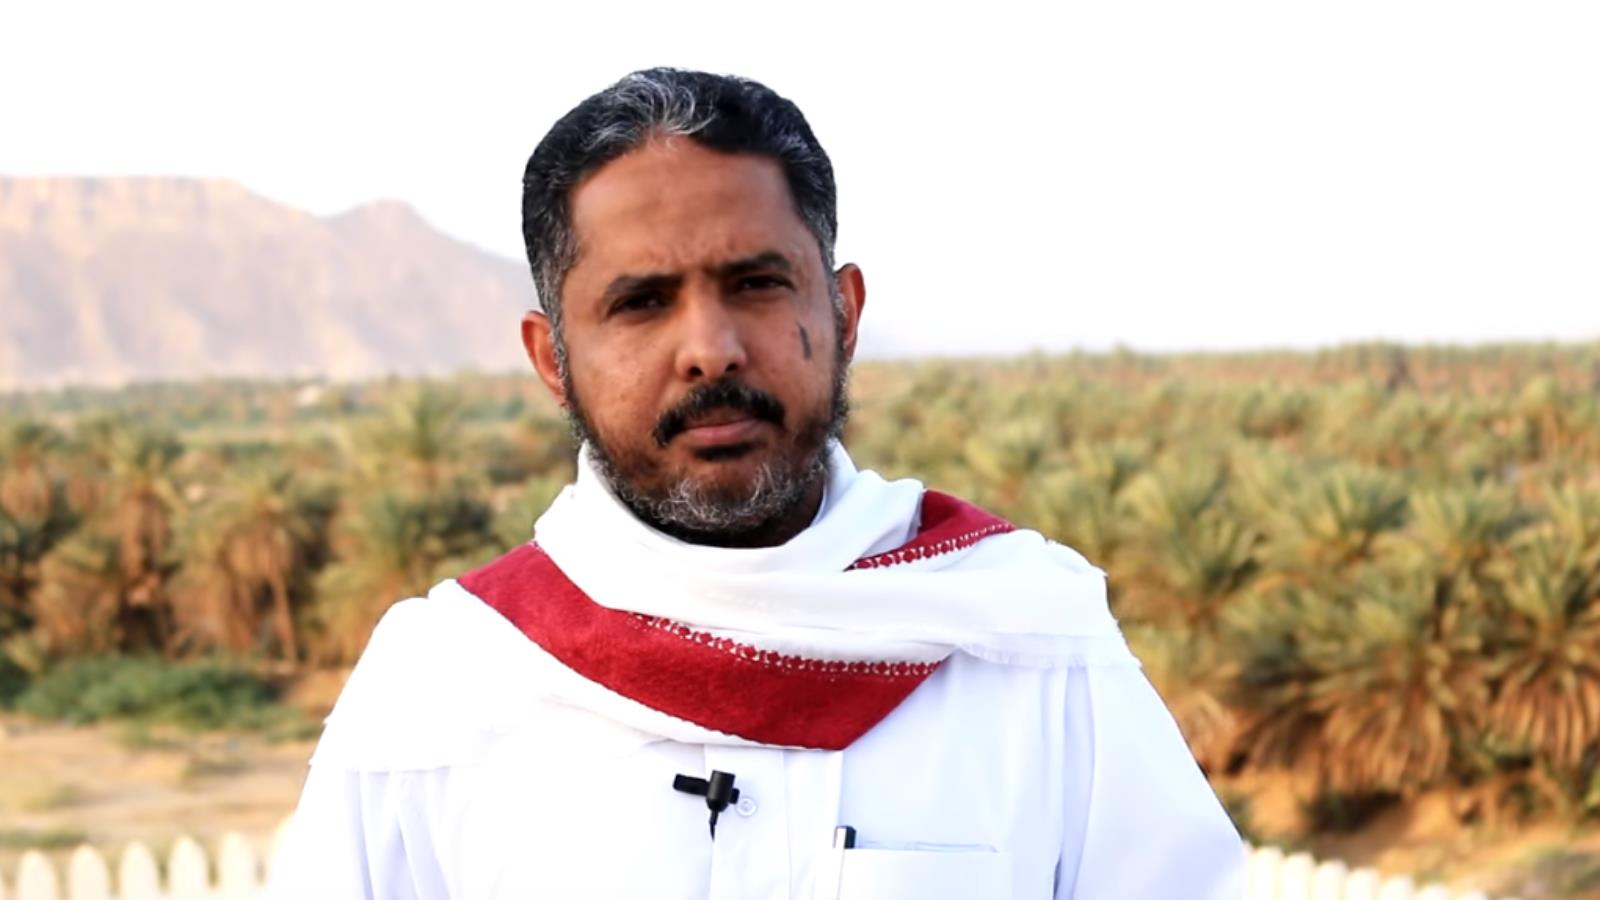 ‪صلاح باتيس: الوحدة اليمنية قيمة وطنية كبيرة ويجب الحفاظ عليها‬ (الجزيرة نت)